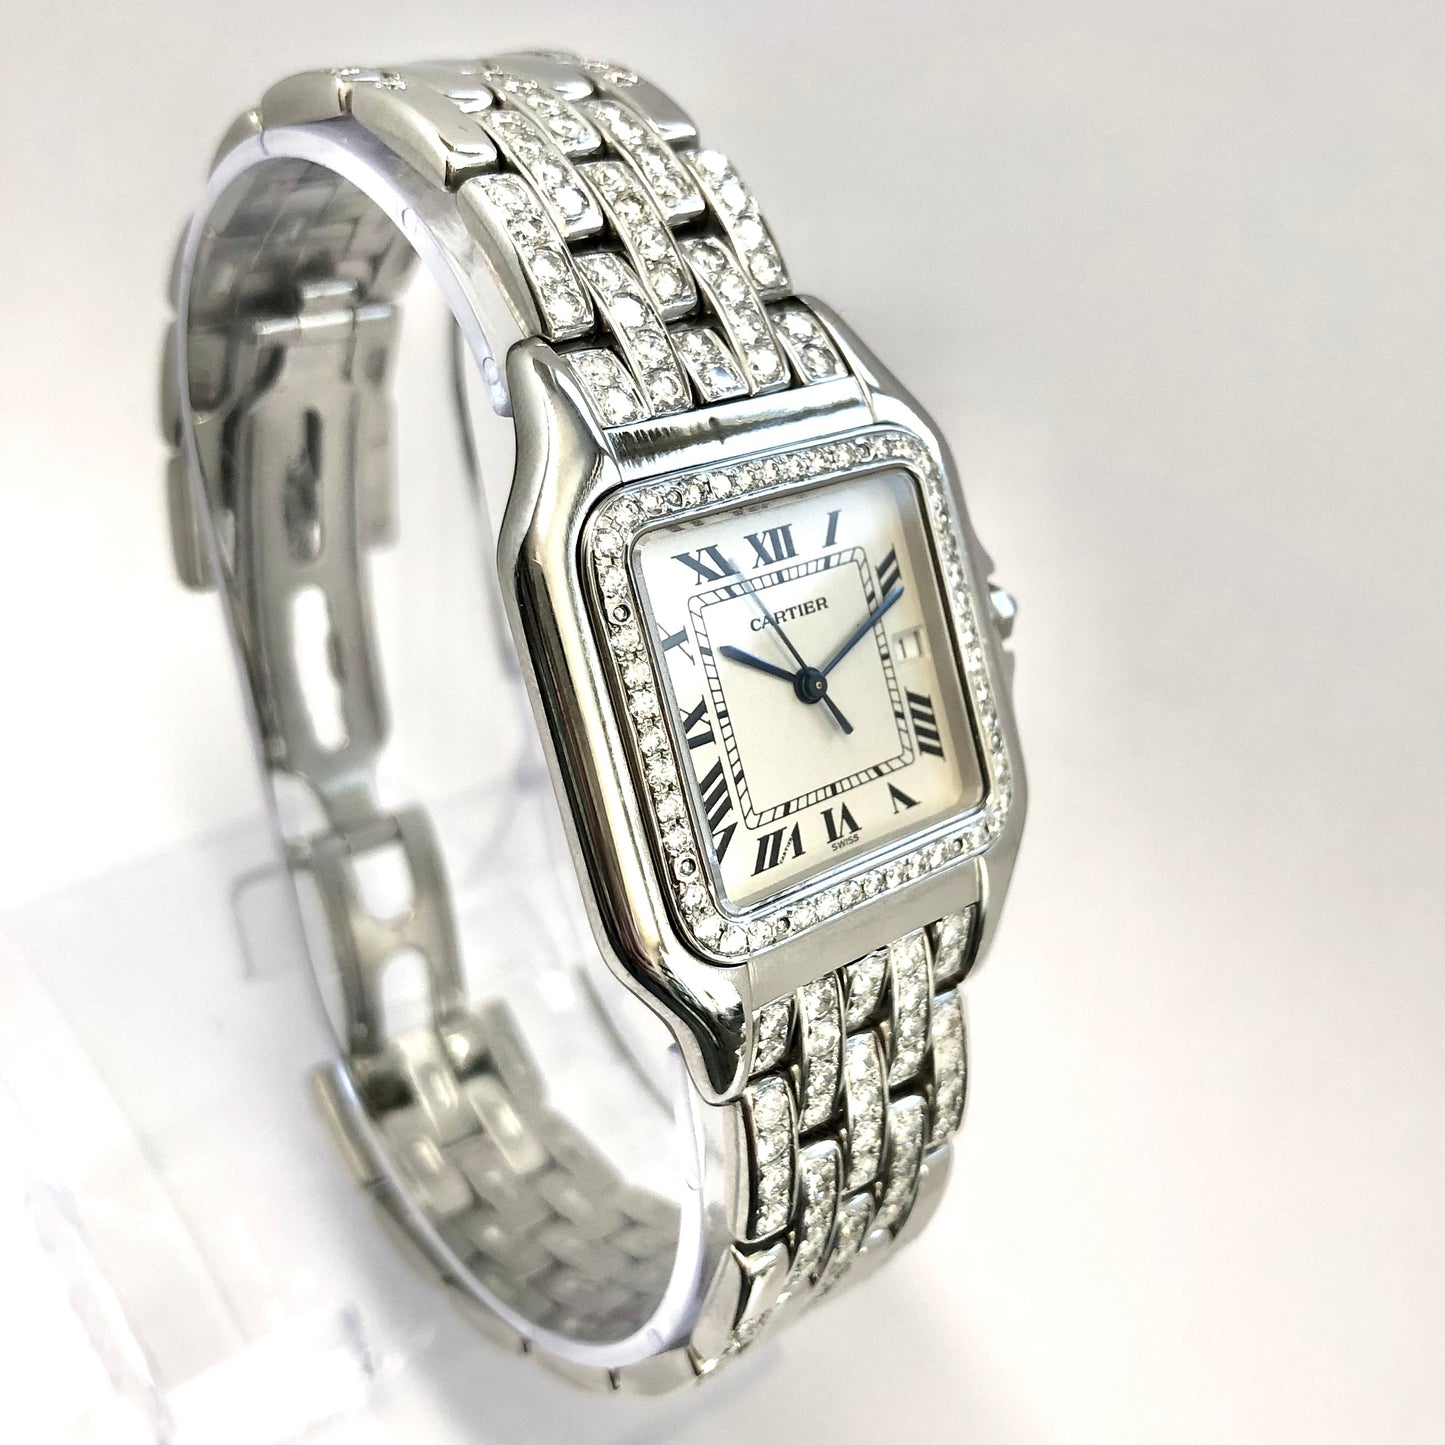 CARTIER PANTHÉRE Quartz 29mm Steel 3.42TCW Diamond Watch